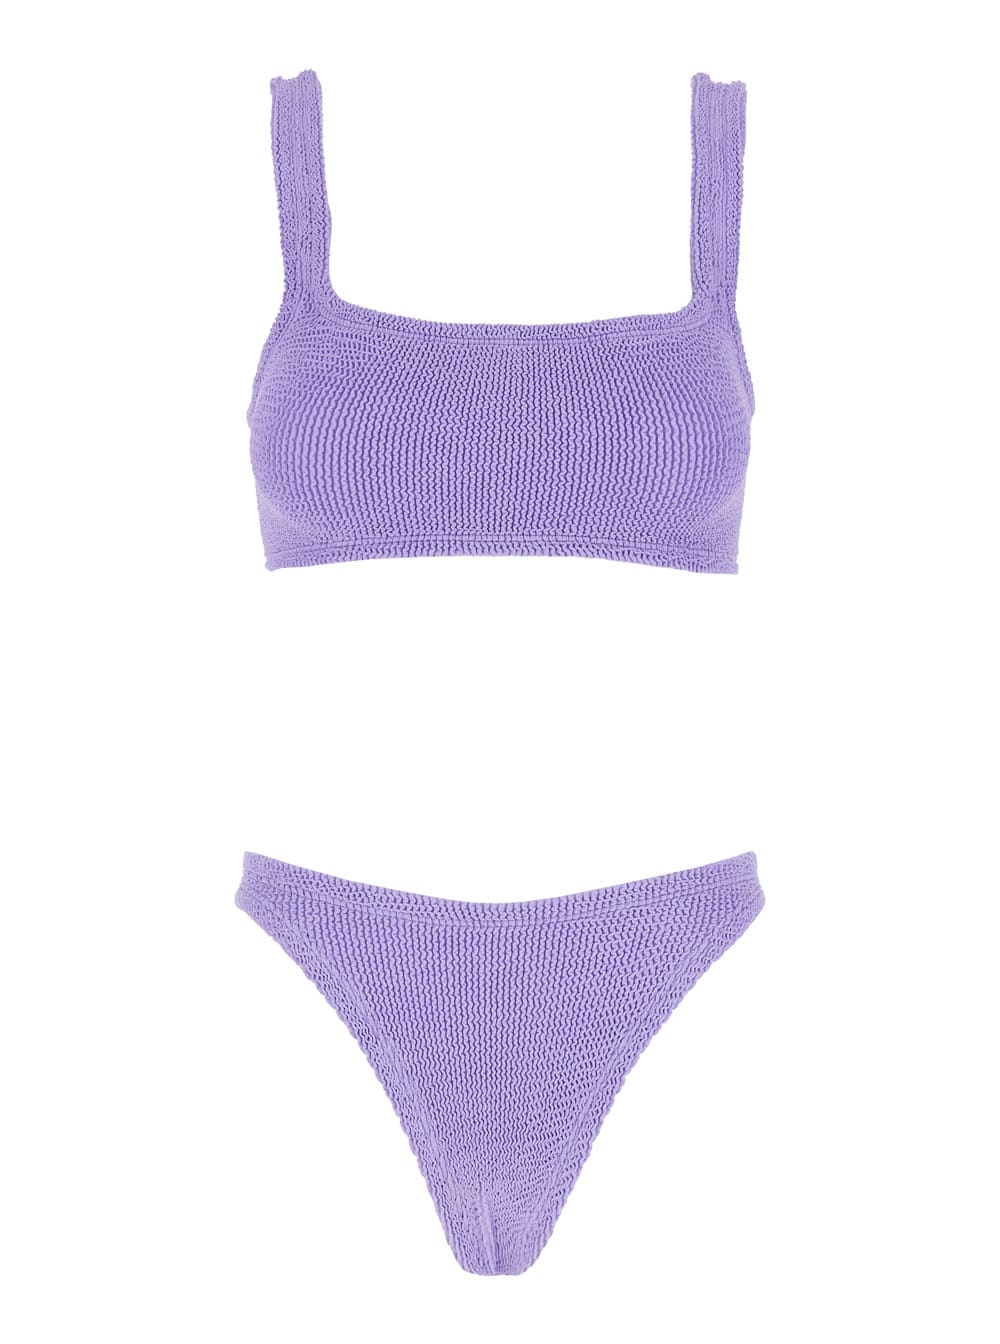 xandra Lilac Bikini With Square Neckline In Elasticized Fabric Woman